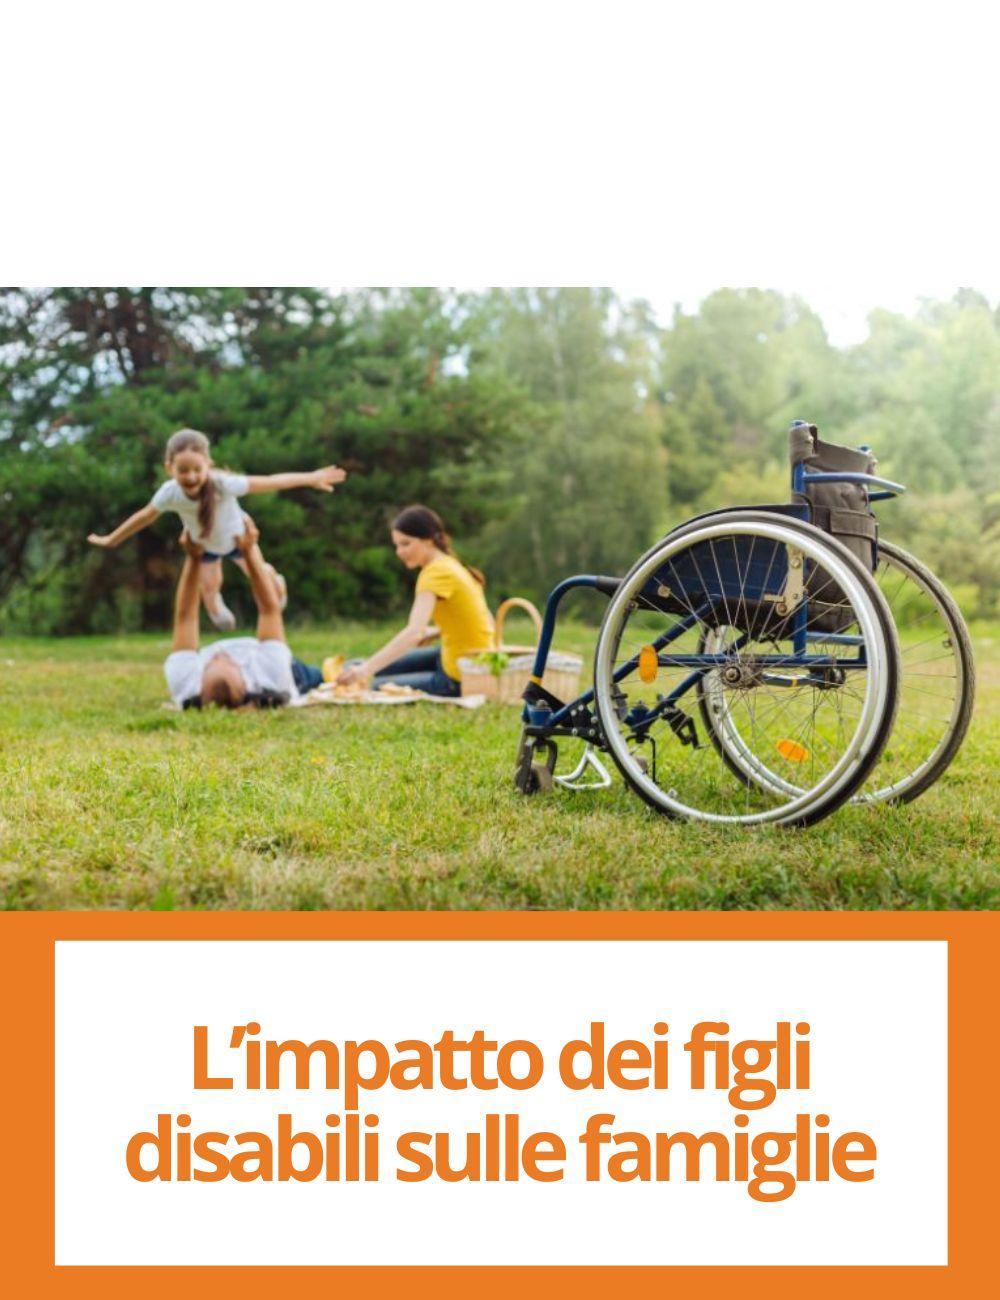 Immagine con link ad articoli su temi simili. L'immagine di una famiglia e una sedia a rotelle rimanda all'articolo intitolato: L'impatto dei figli disabili sulle famiglie